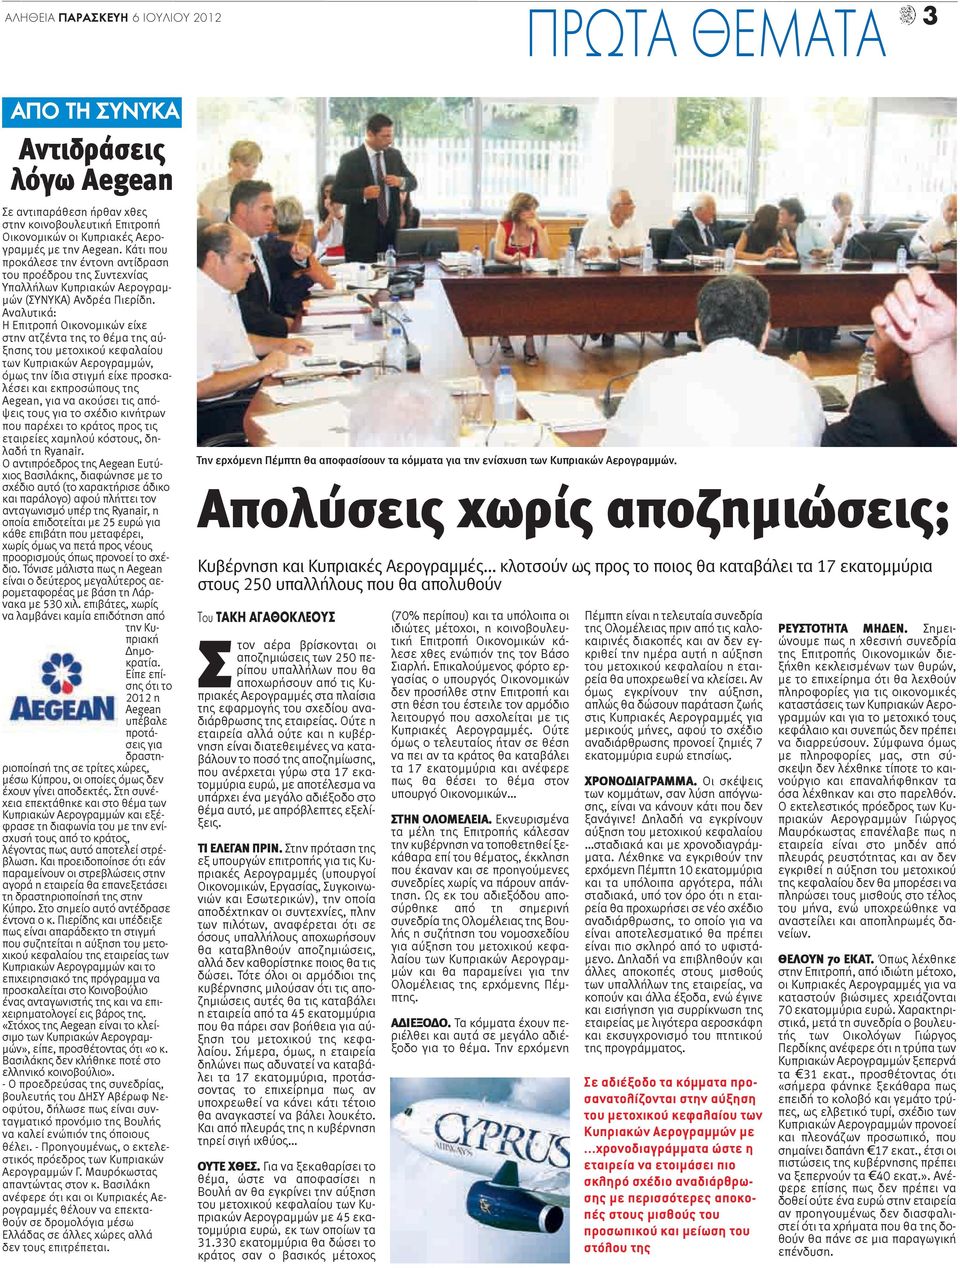 Αναλυτικά: Η Επιτροπή Οικονομικών είχε στην ατζέντα της το θέμα της αύξησης του μετοχικού κεφαλαίου των Κυπριακών Αερογραμμών, όμως την ίδια στιγμή είχε προσκαλέσει και εκπροσώπους της Aegean, για να